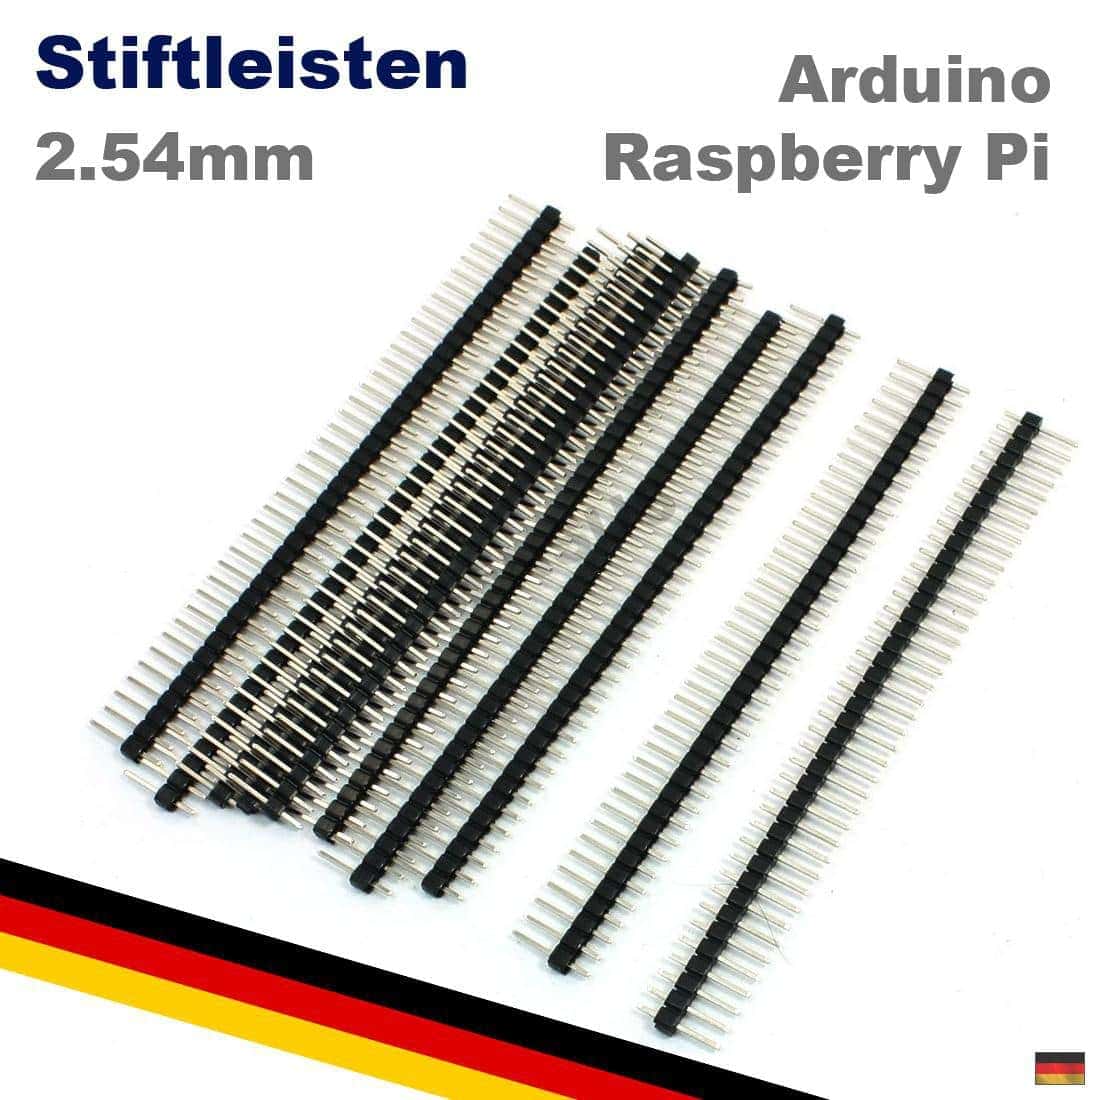 40 Pin 2,54 mm Stiftleiste Male Pin Header einreihig Arduino Raspberry Pi